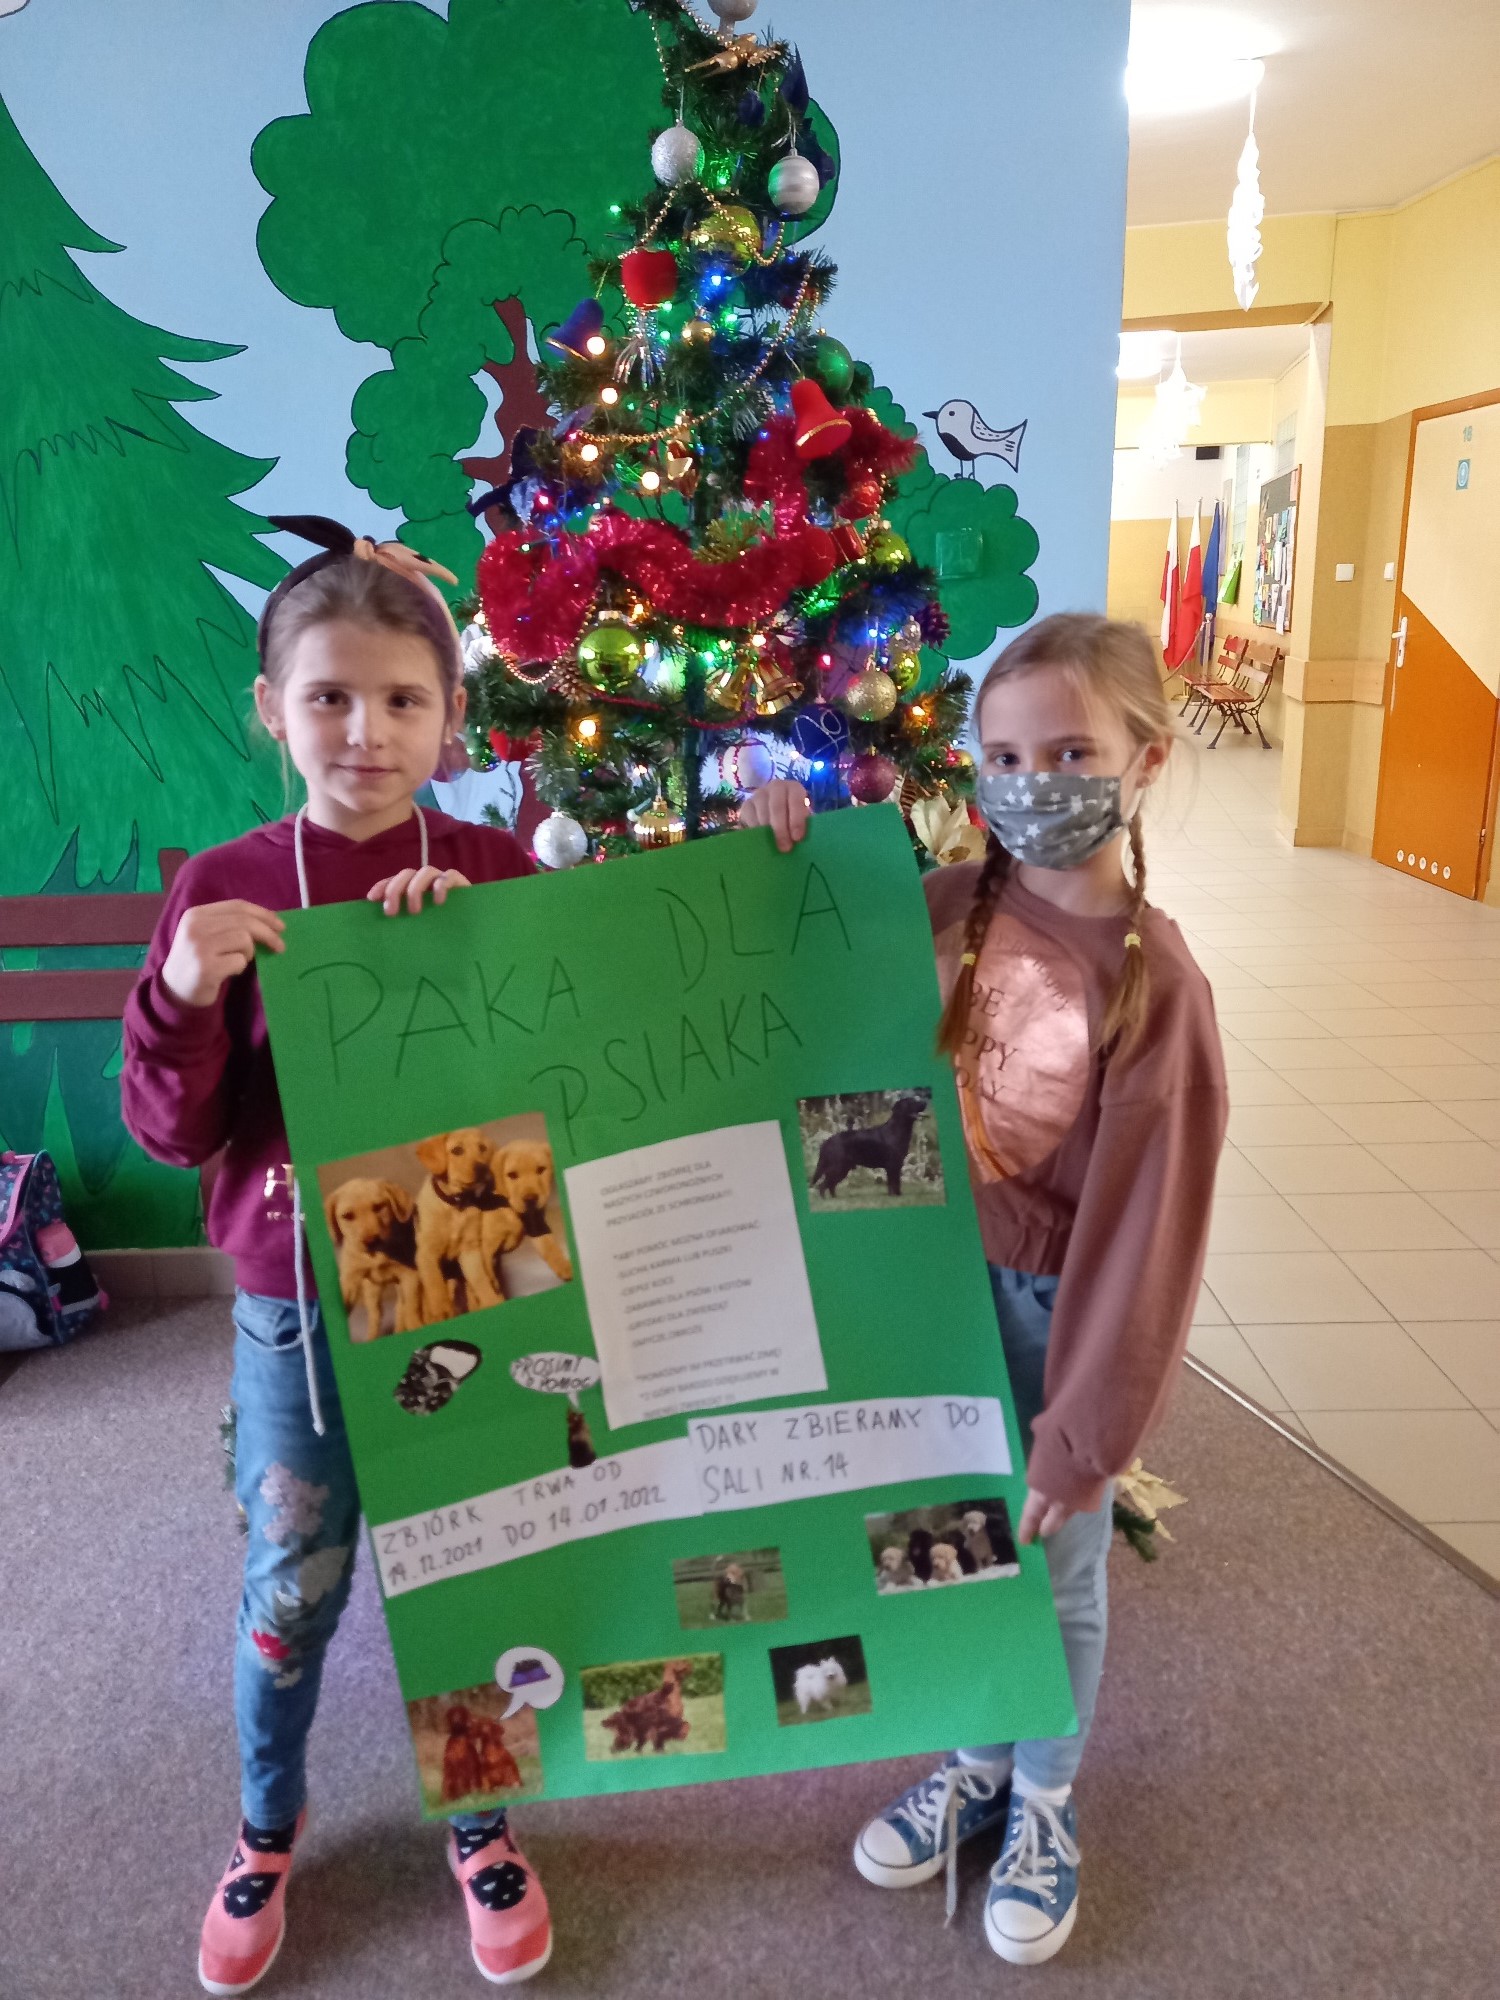 Dwie dziewczynki trzymają dużą zieloną kartę tytułem Paka dla psiaka ze zdjęciami psów